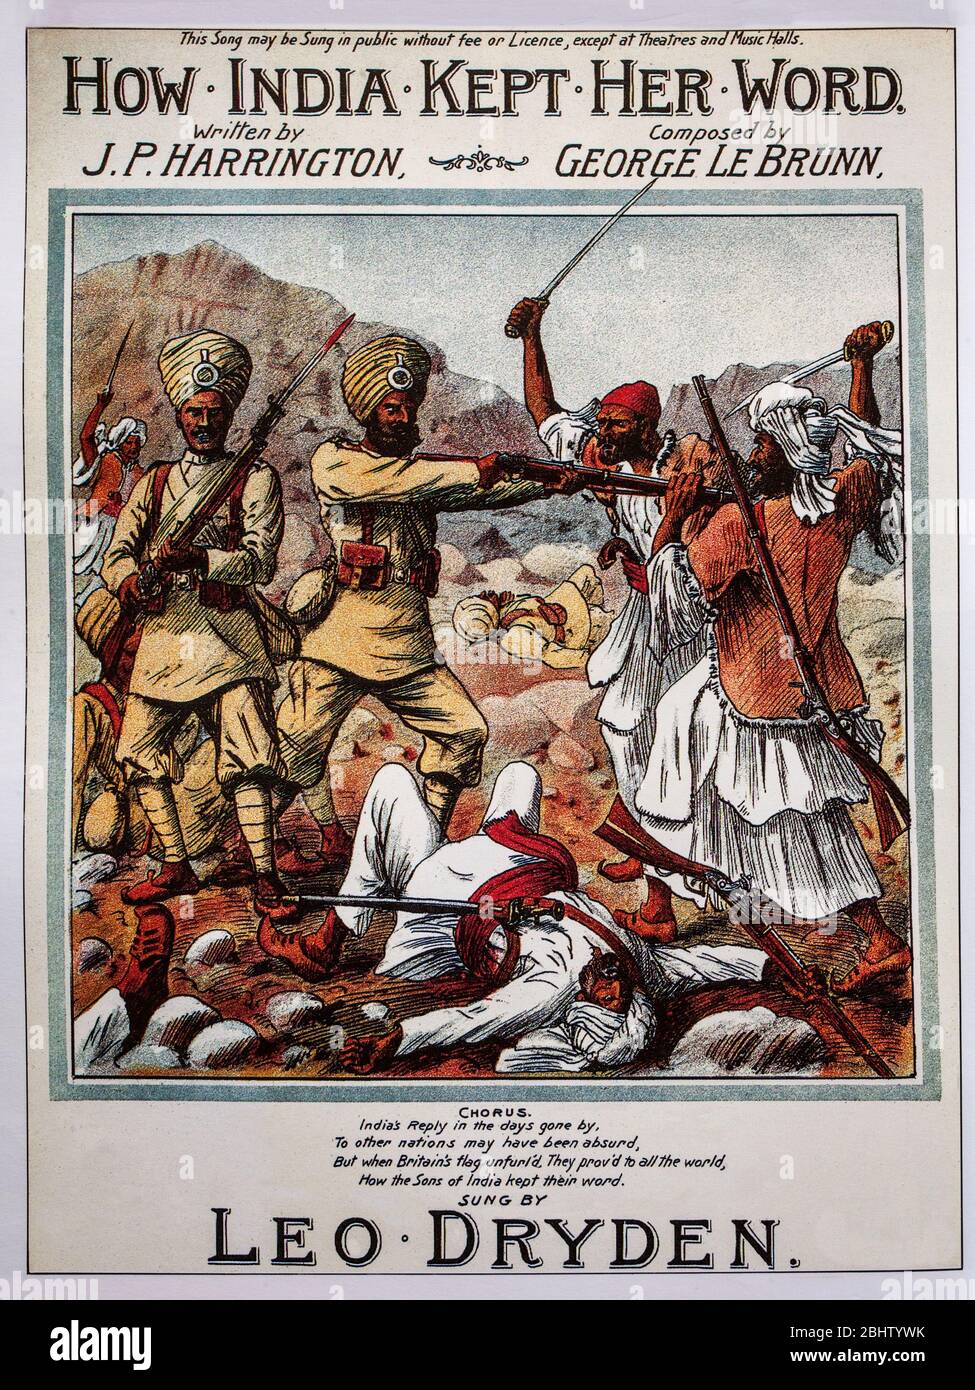 La musique de la feuille du XIXe siècle couvre la loyauté des soldats indiens sous commandement britannique pendant le Raj britannique. Banque D'Images